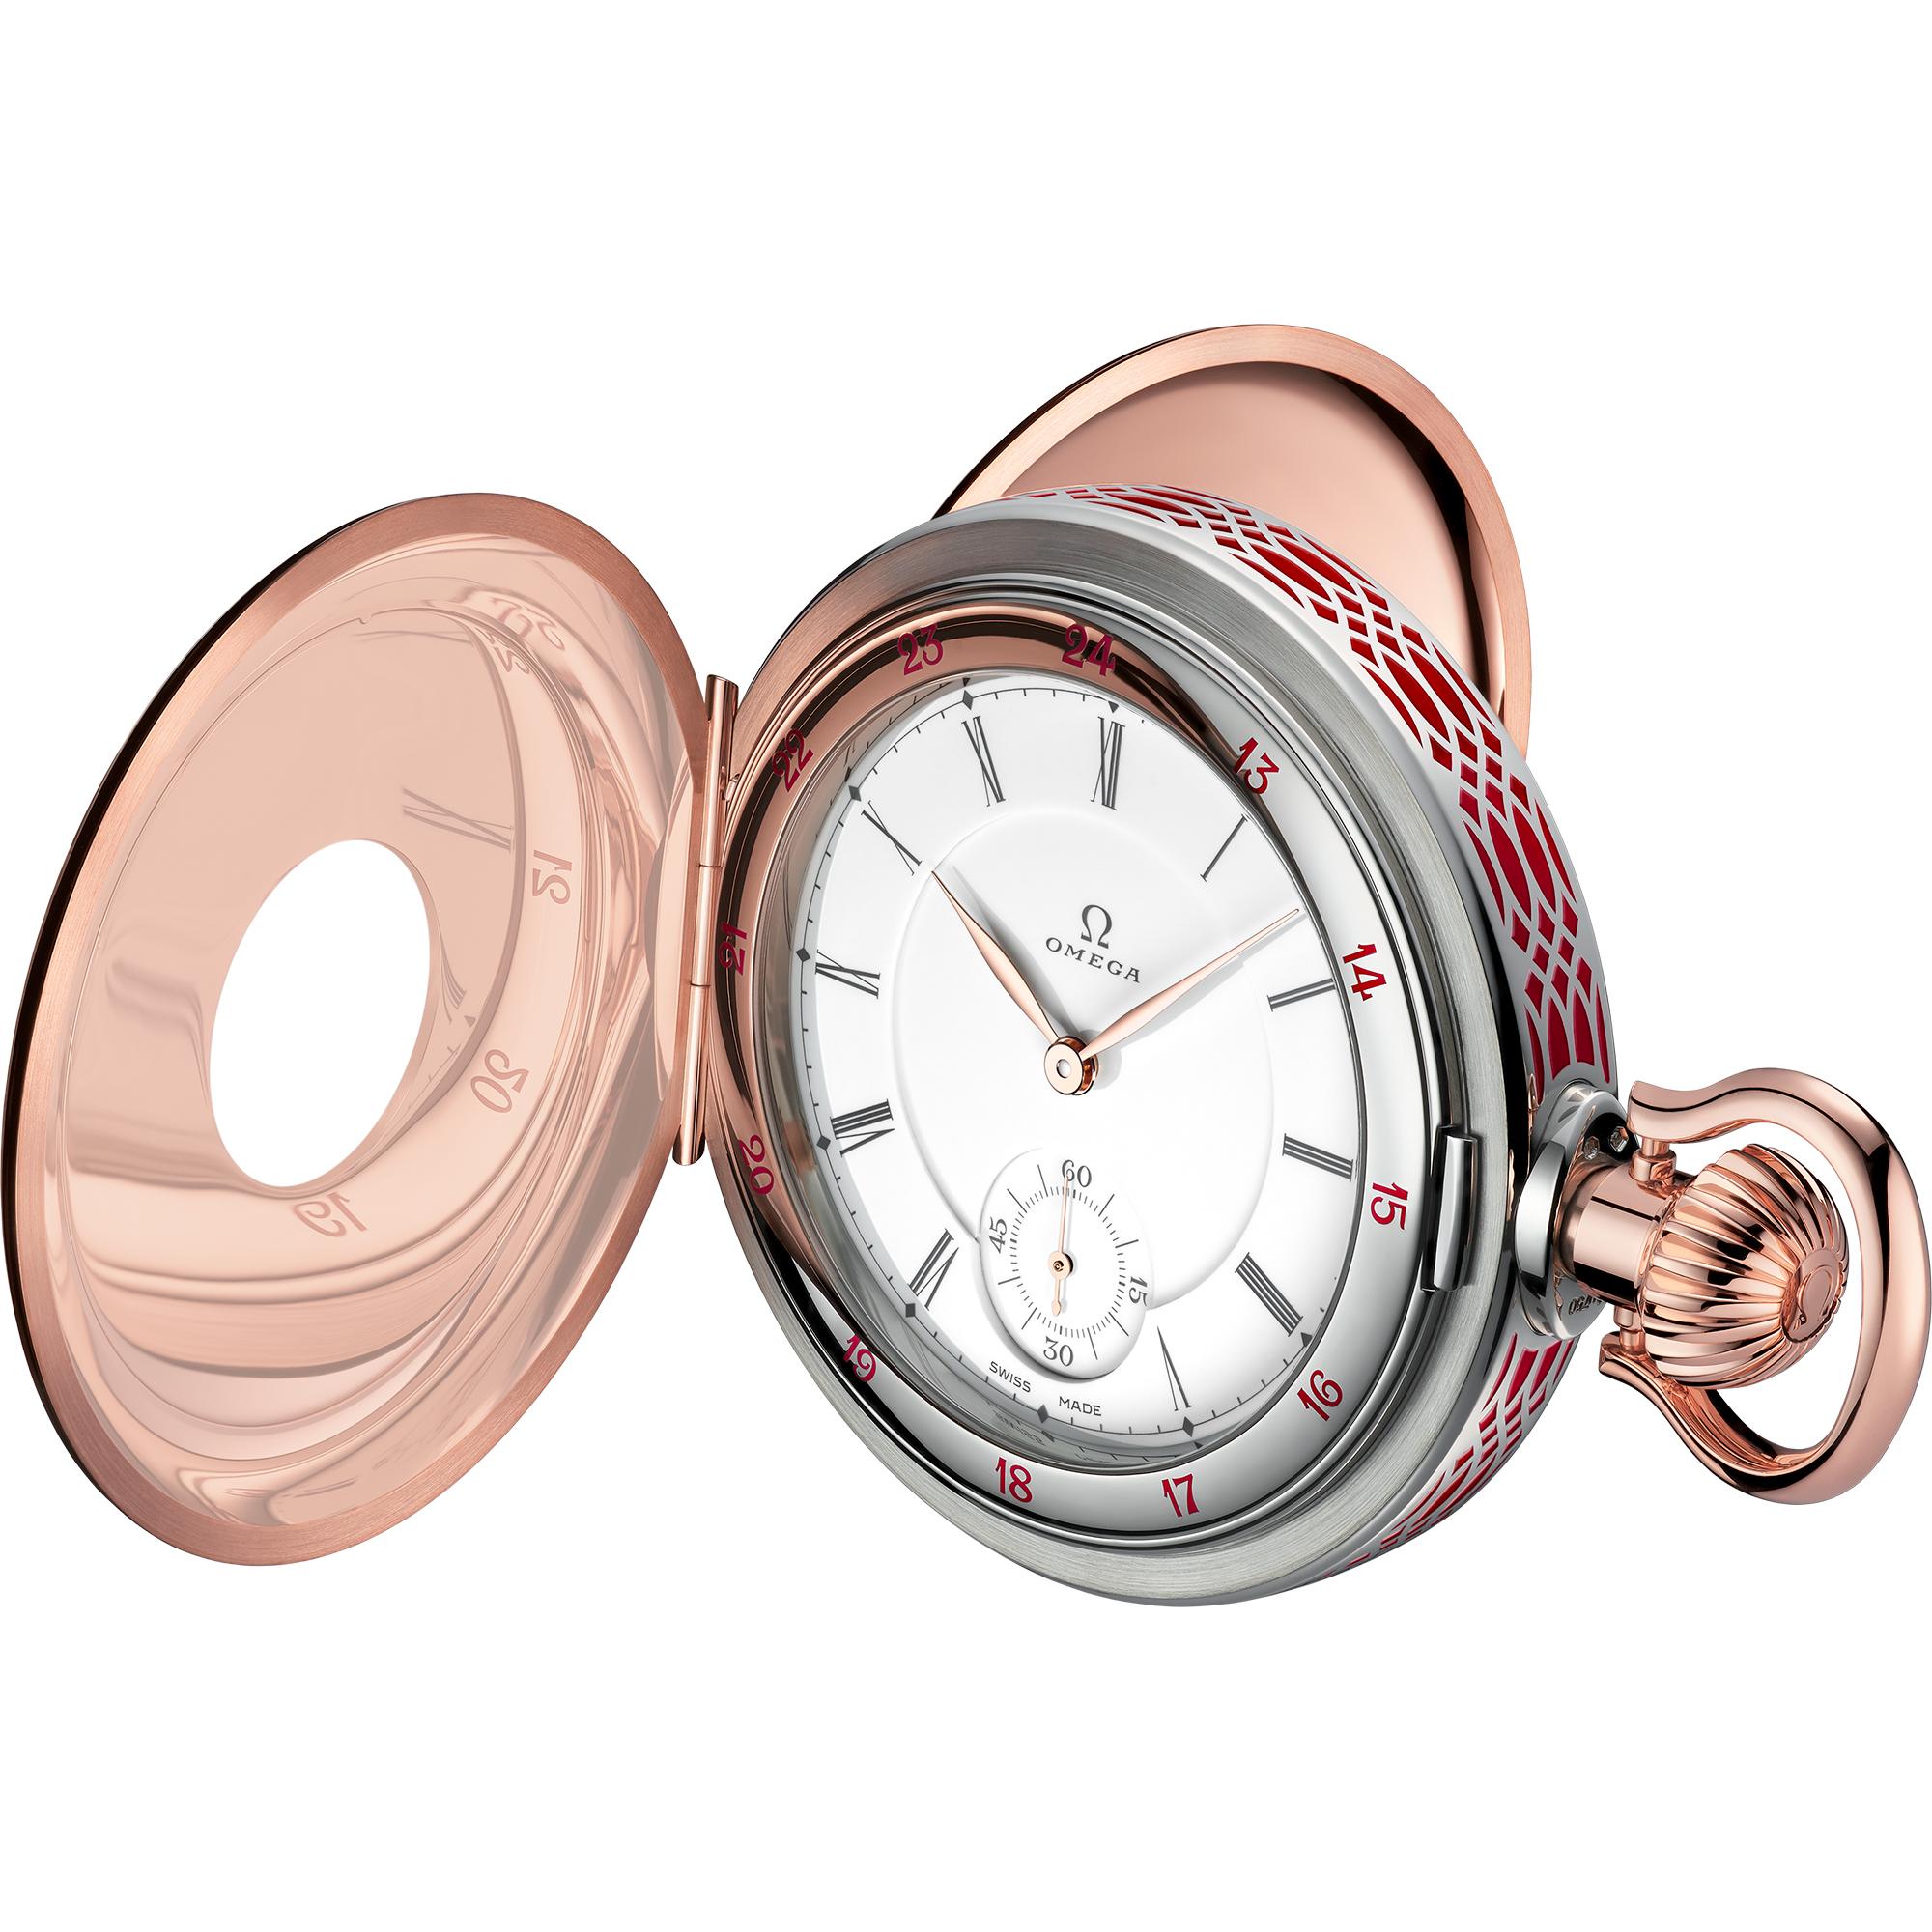 Modelos Especiais Relógio de bolso OMEGA 125° Aniversário 60 mm, ouro Sedna™ - Canopus Gold™ - 518.62.60.00.04.001